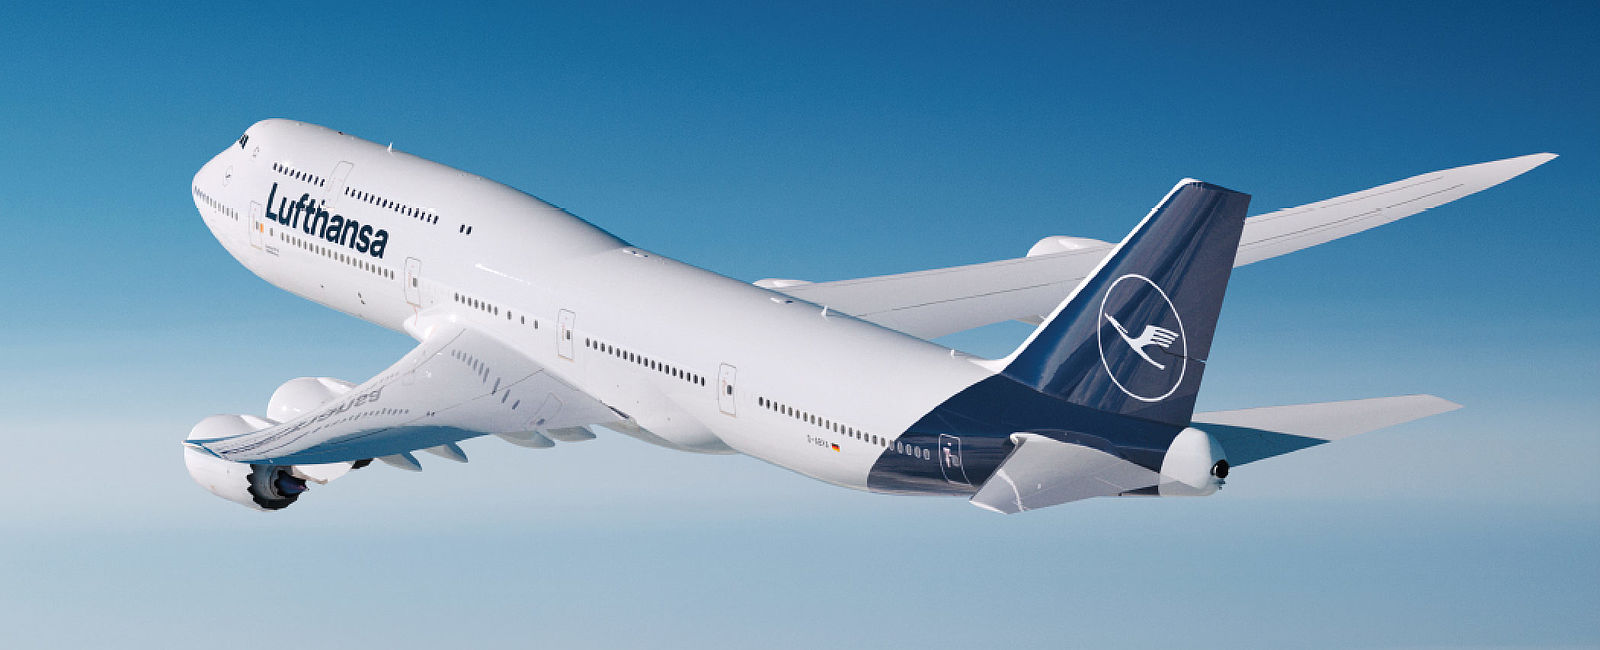 AIRLINE ANGEBOTE
 Mit Lufthansa in der Business Class nach Dubai ab 1.014 Euro 
